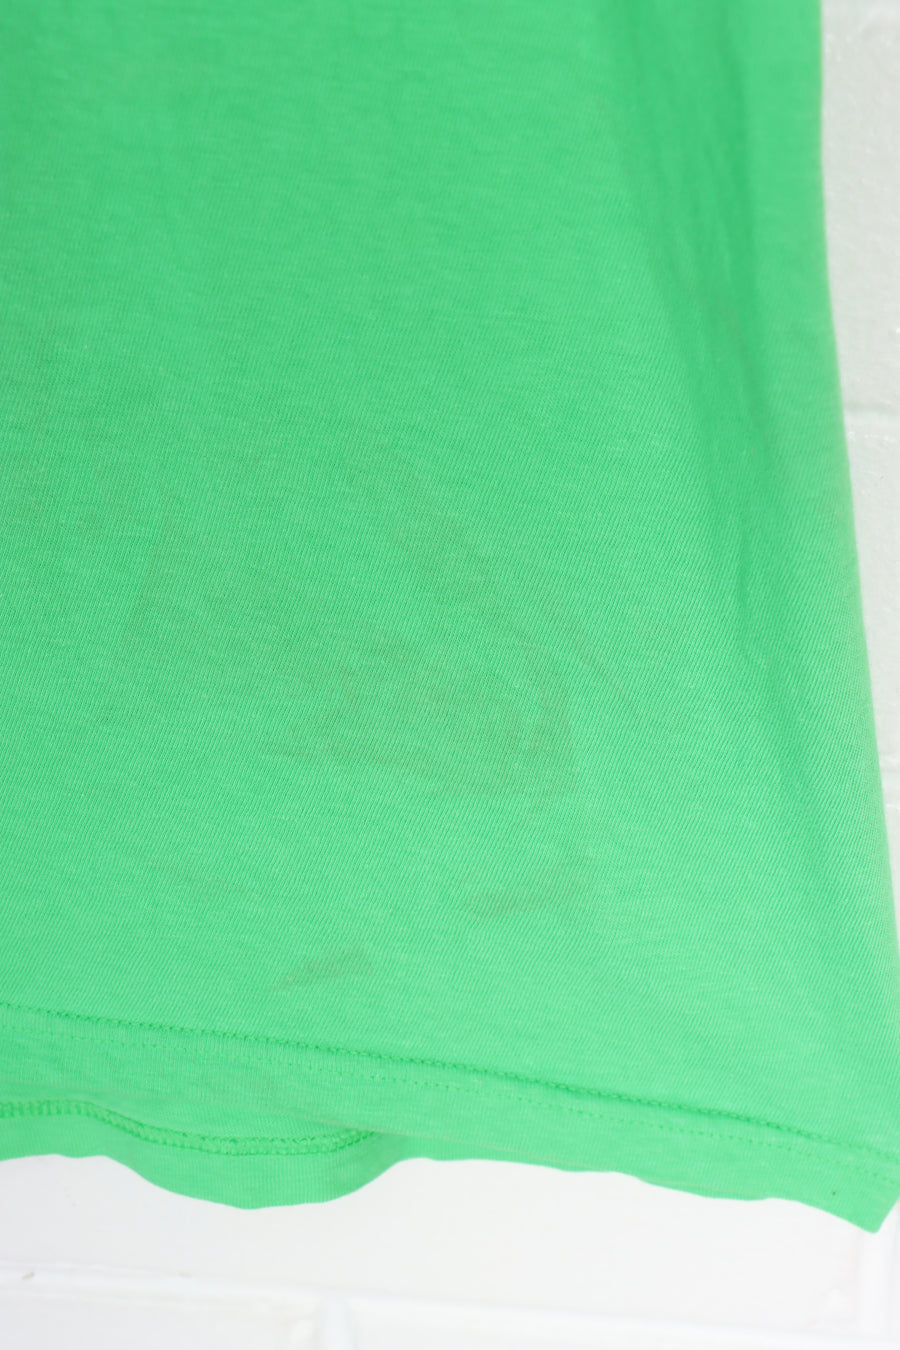 STUSSY Fluro Green & Black Logo T-Shirt (L)